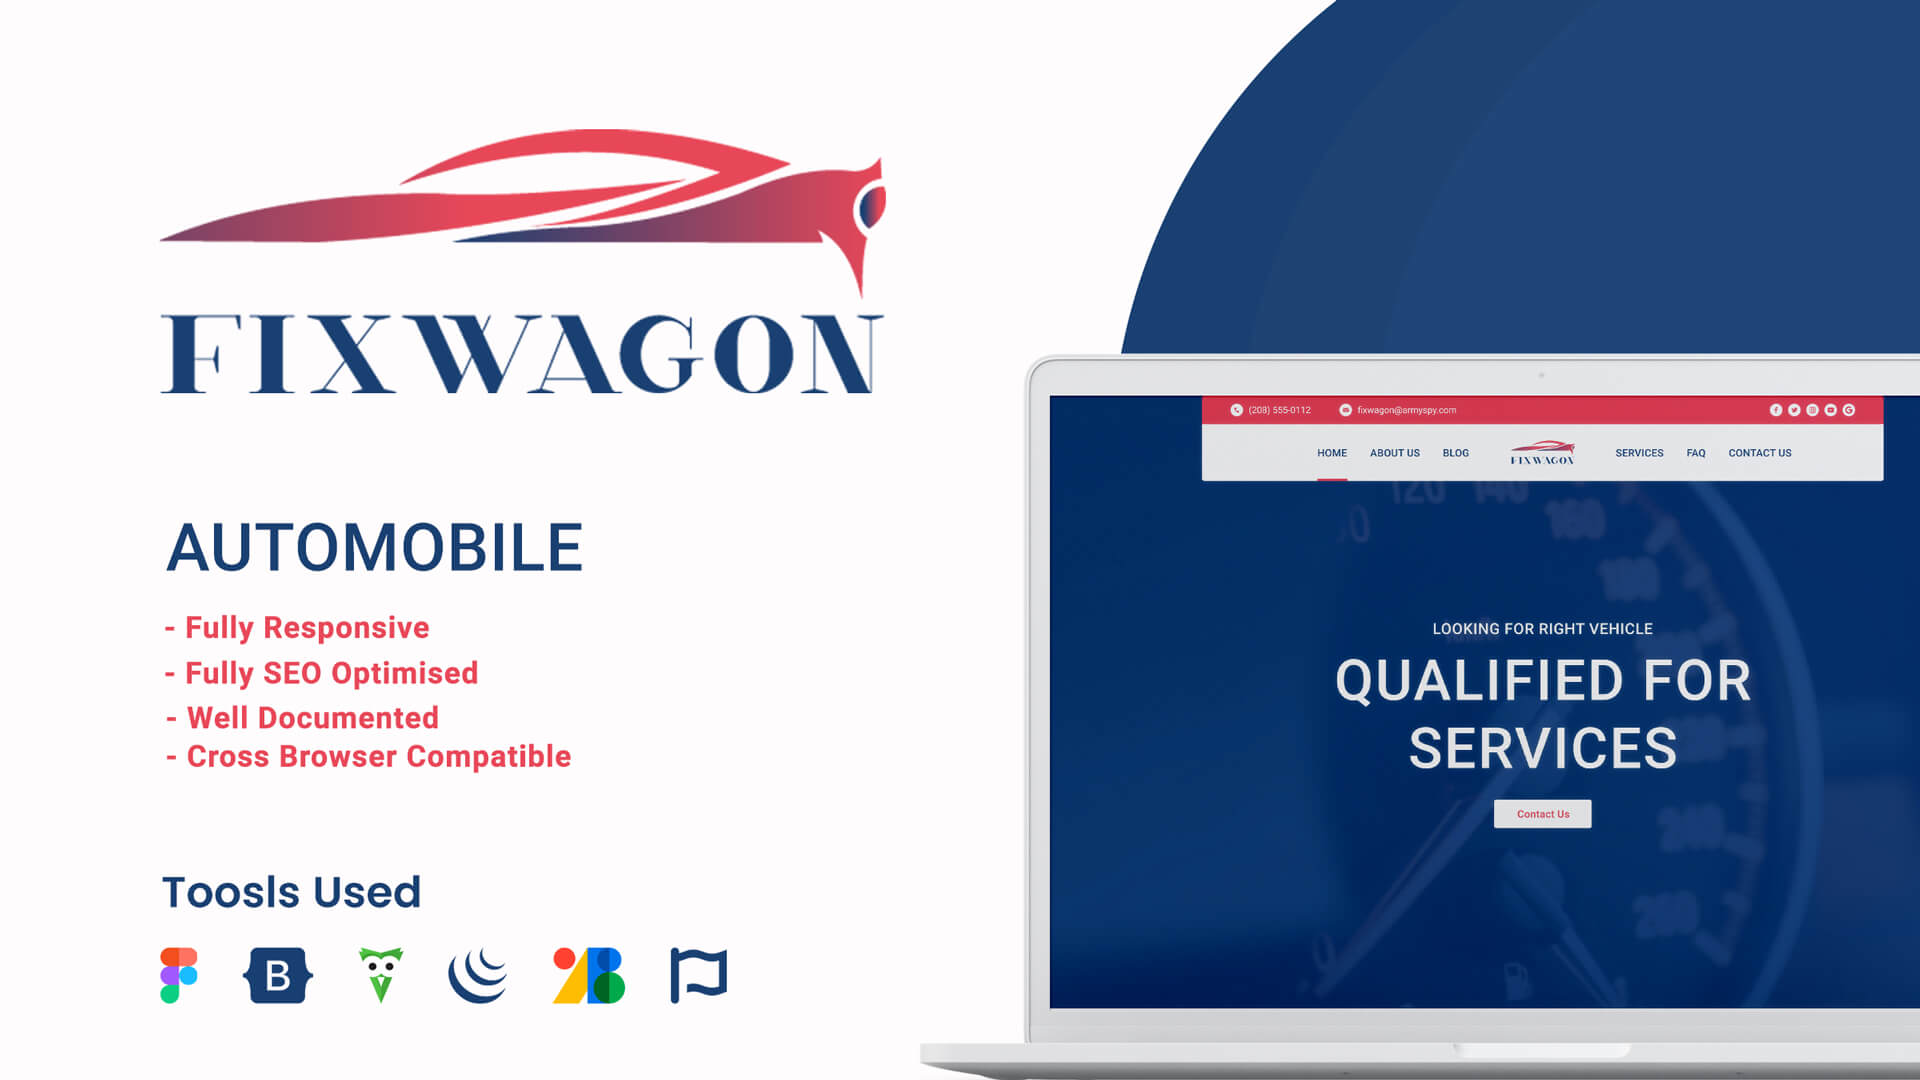 Fixwagon – Automobile Business Website Template